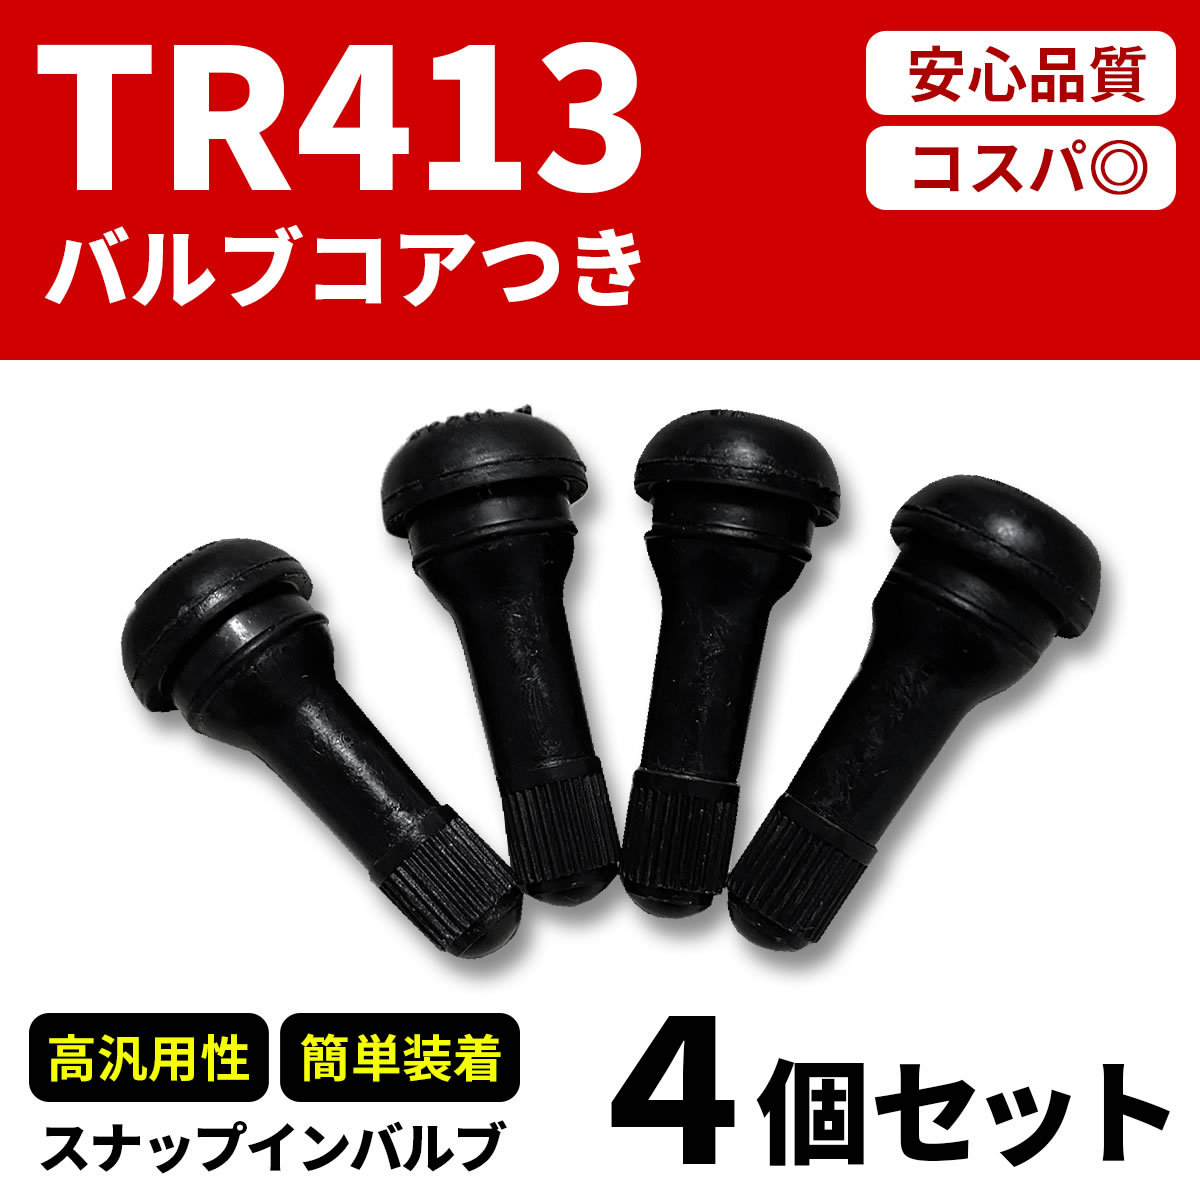 チューブレスタイヤゴムバルブ4個セット TR413